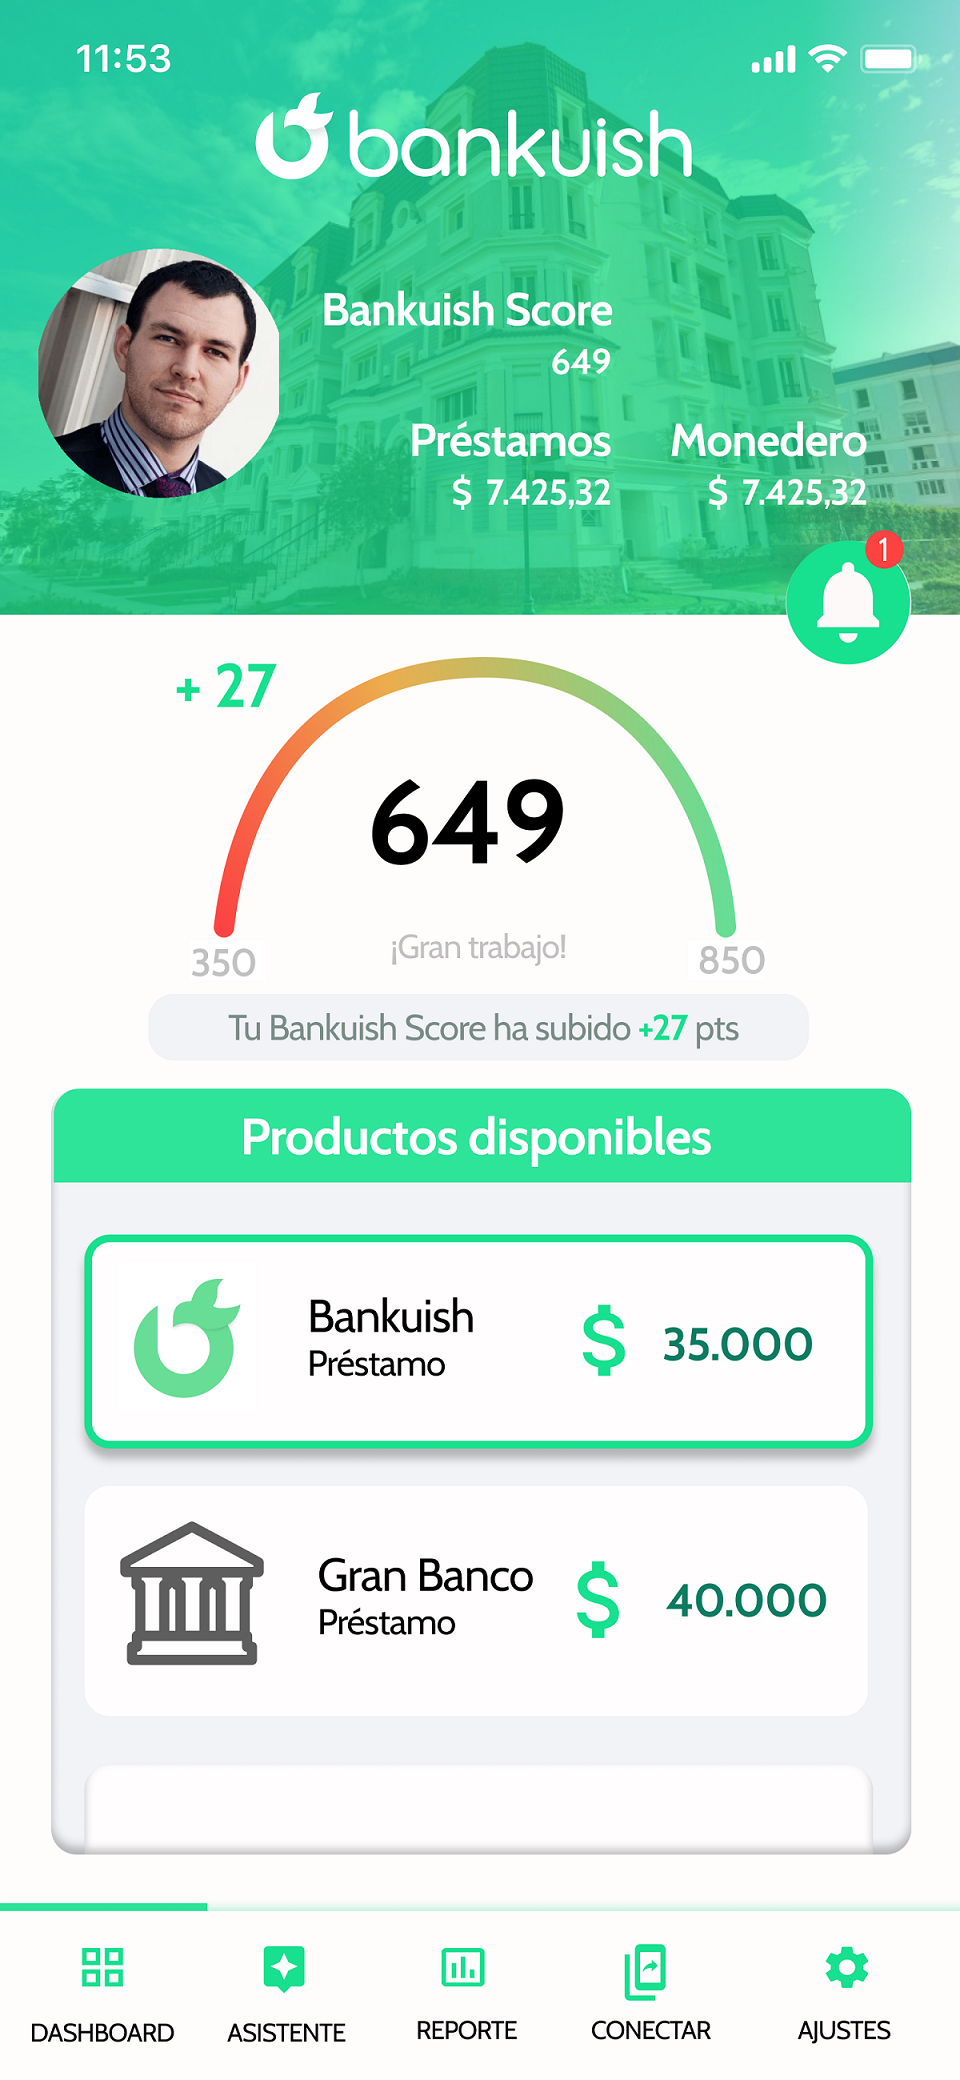 BANKUISH CIERRA 2021 COMO EL AÑO DE SU DESPEGUE EN MÉXICO AGRUPANDO A 50 MIL TRABAJADORES INDEPENDIENTES